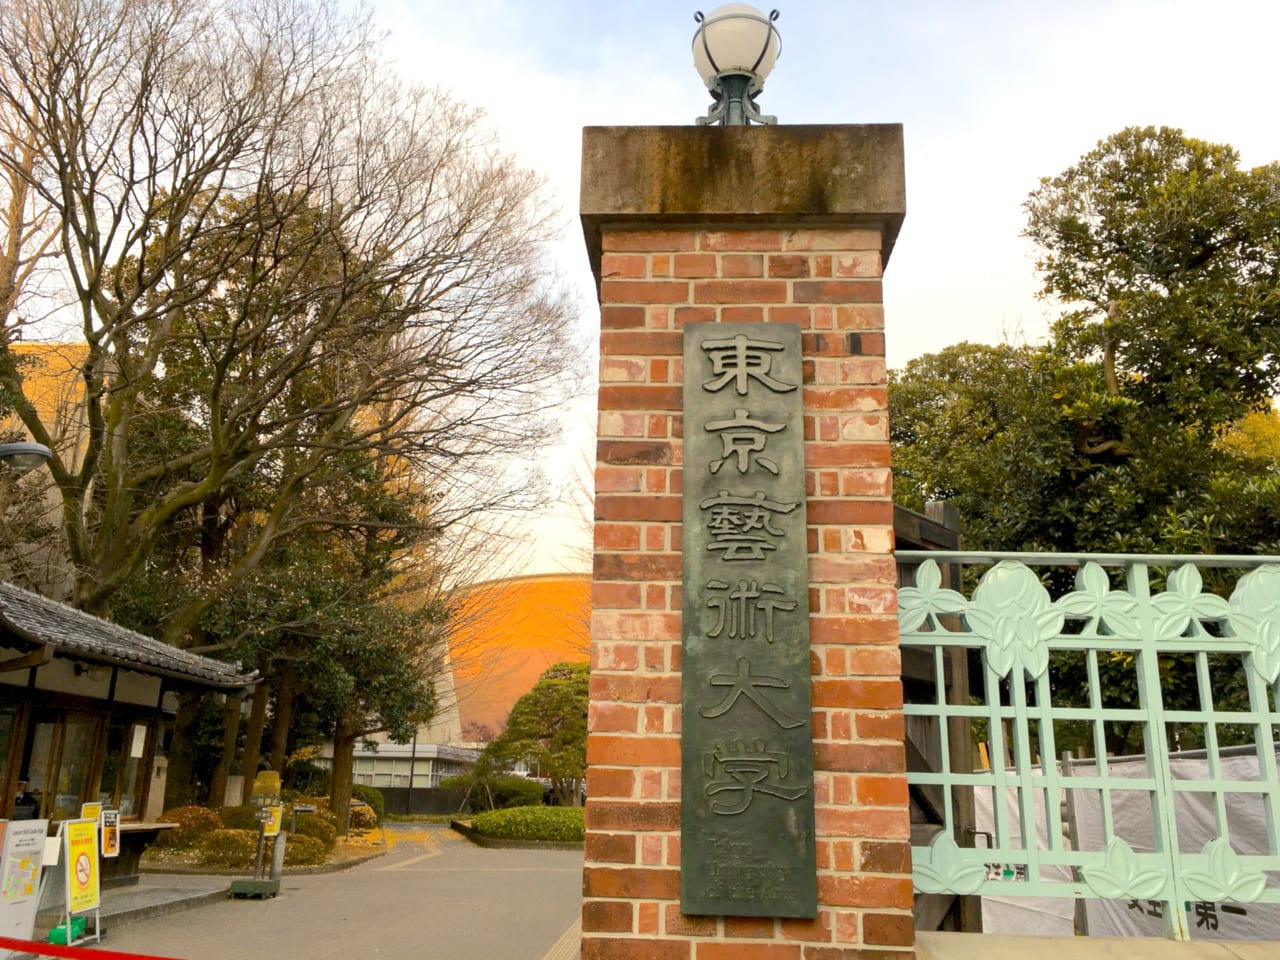 東京藝術大学の門前